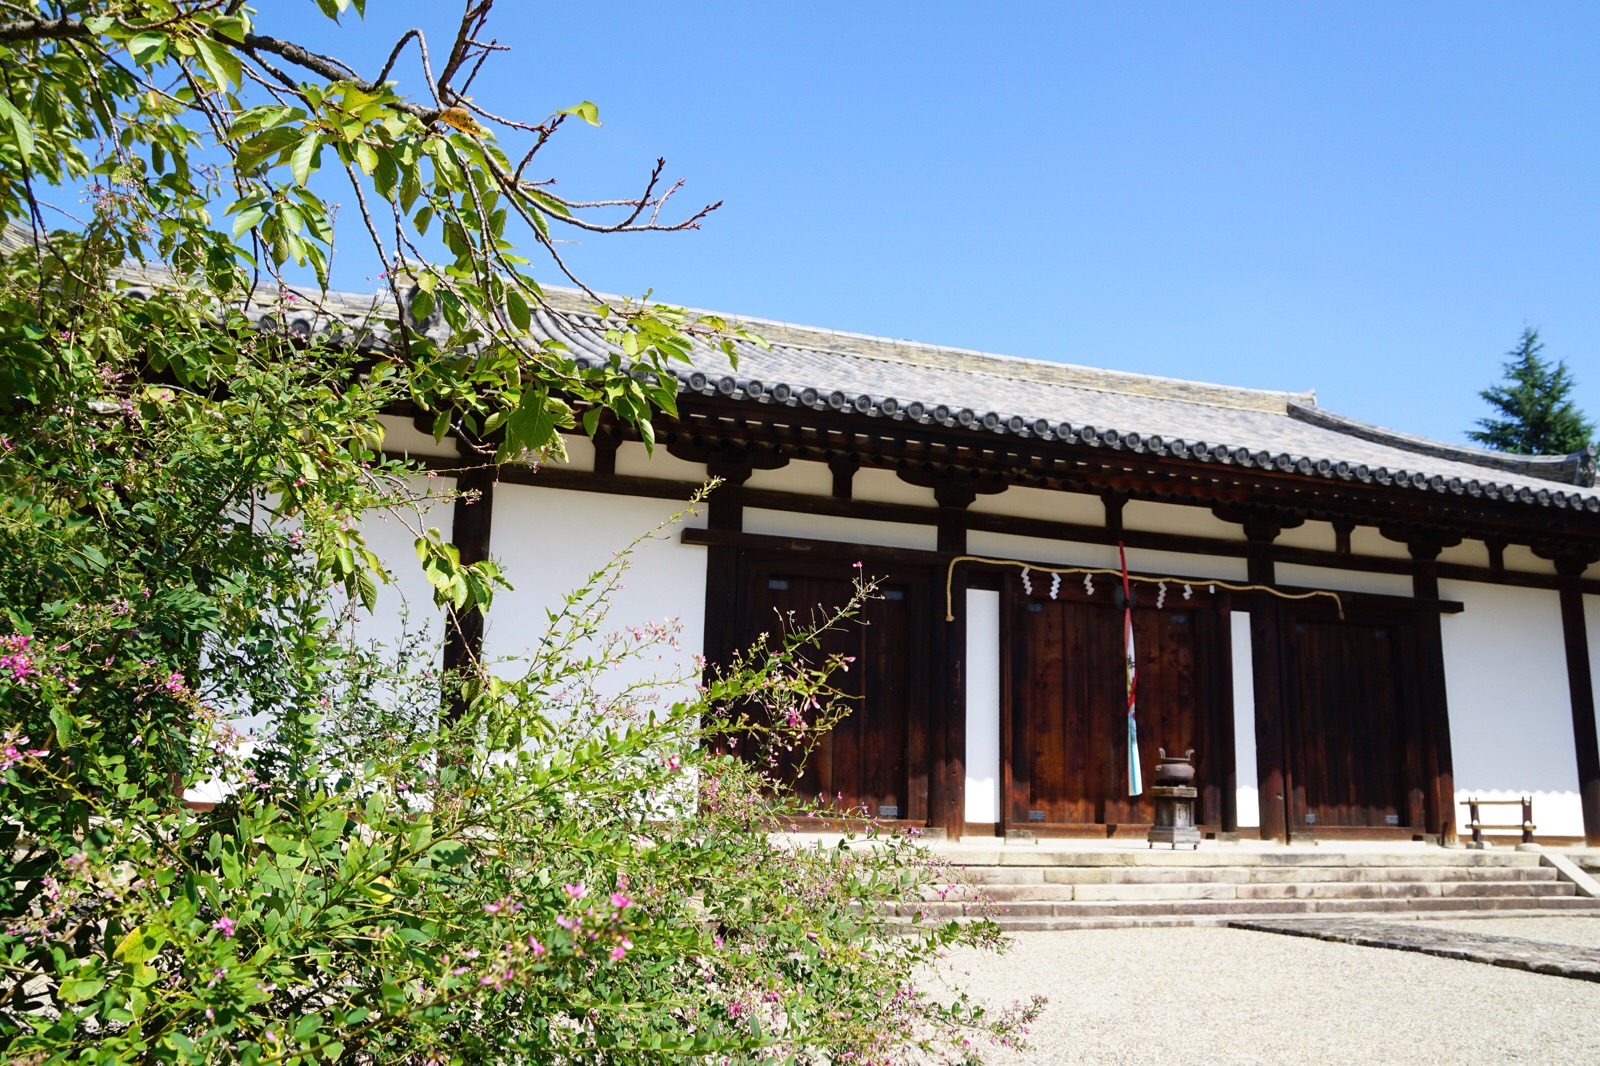 高円山は萩の名所としても有名で、新薬師寺にも萩の花が咲いています。